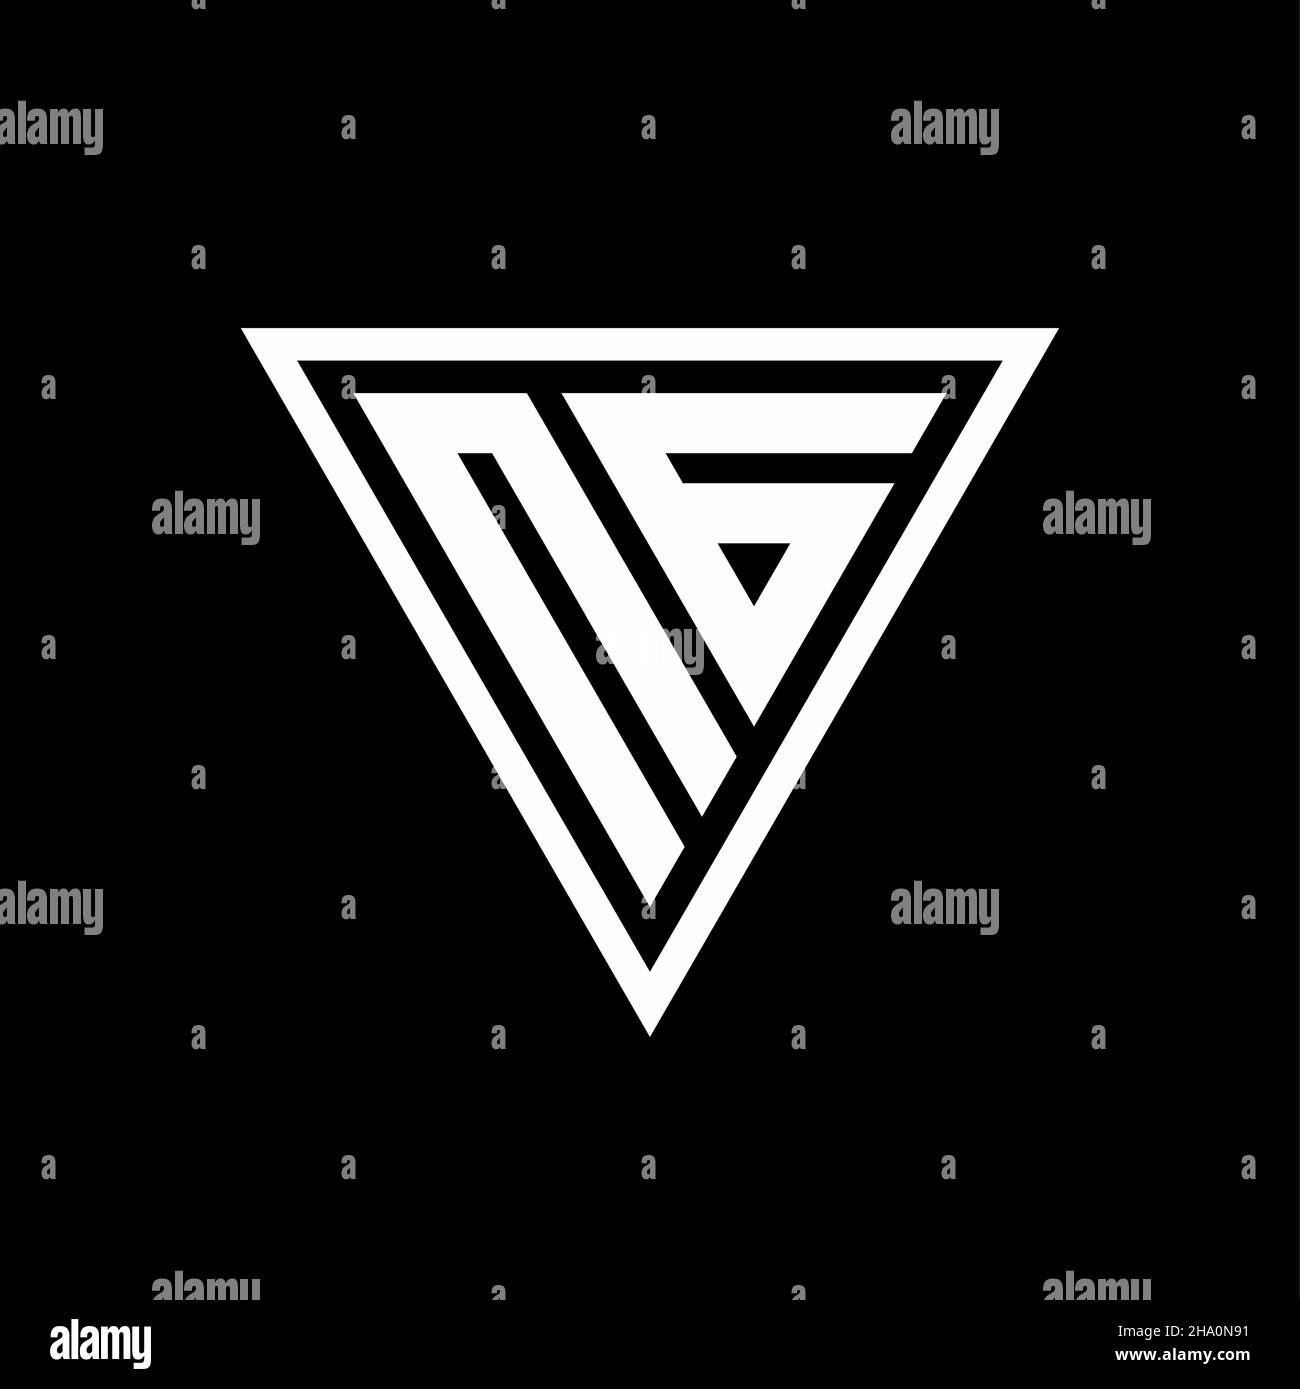 NG Logo monogram with tirangle shape isolated on black background